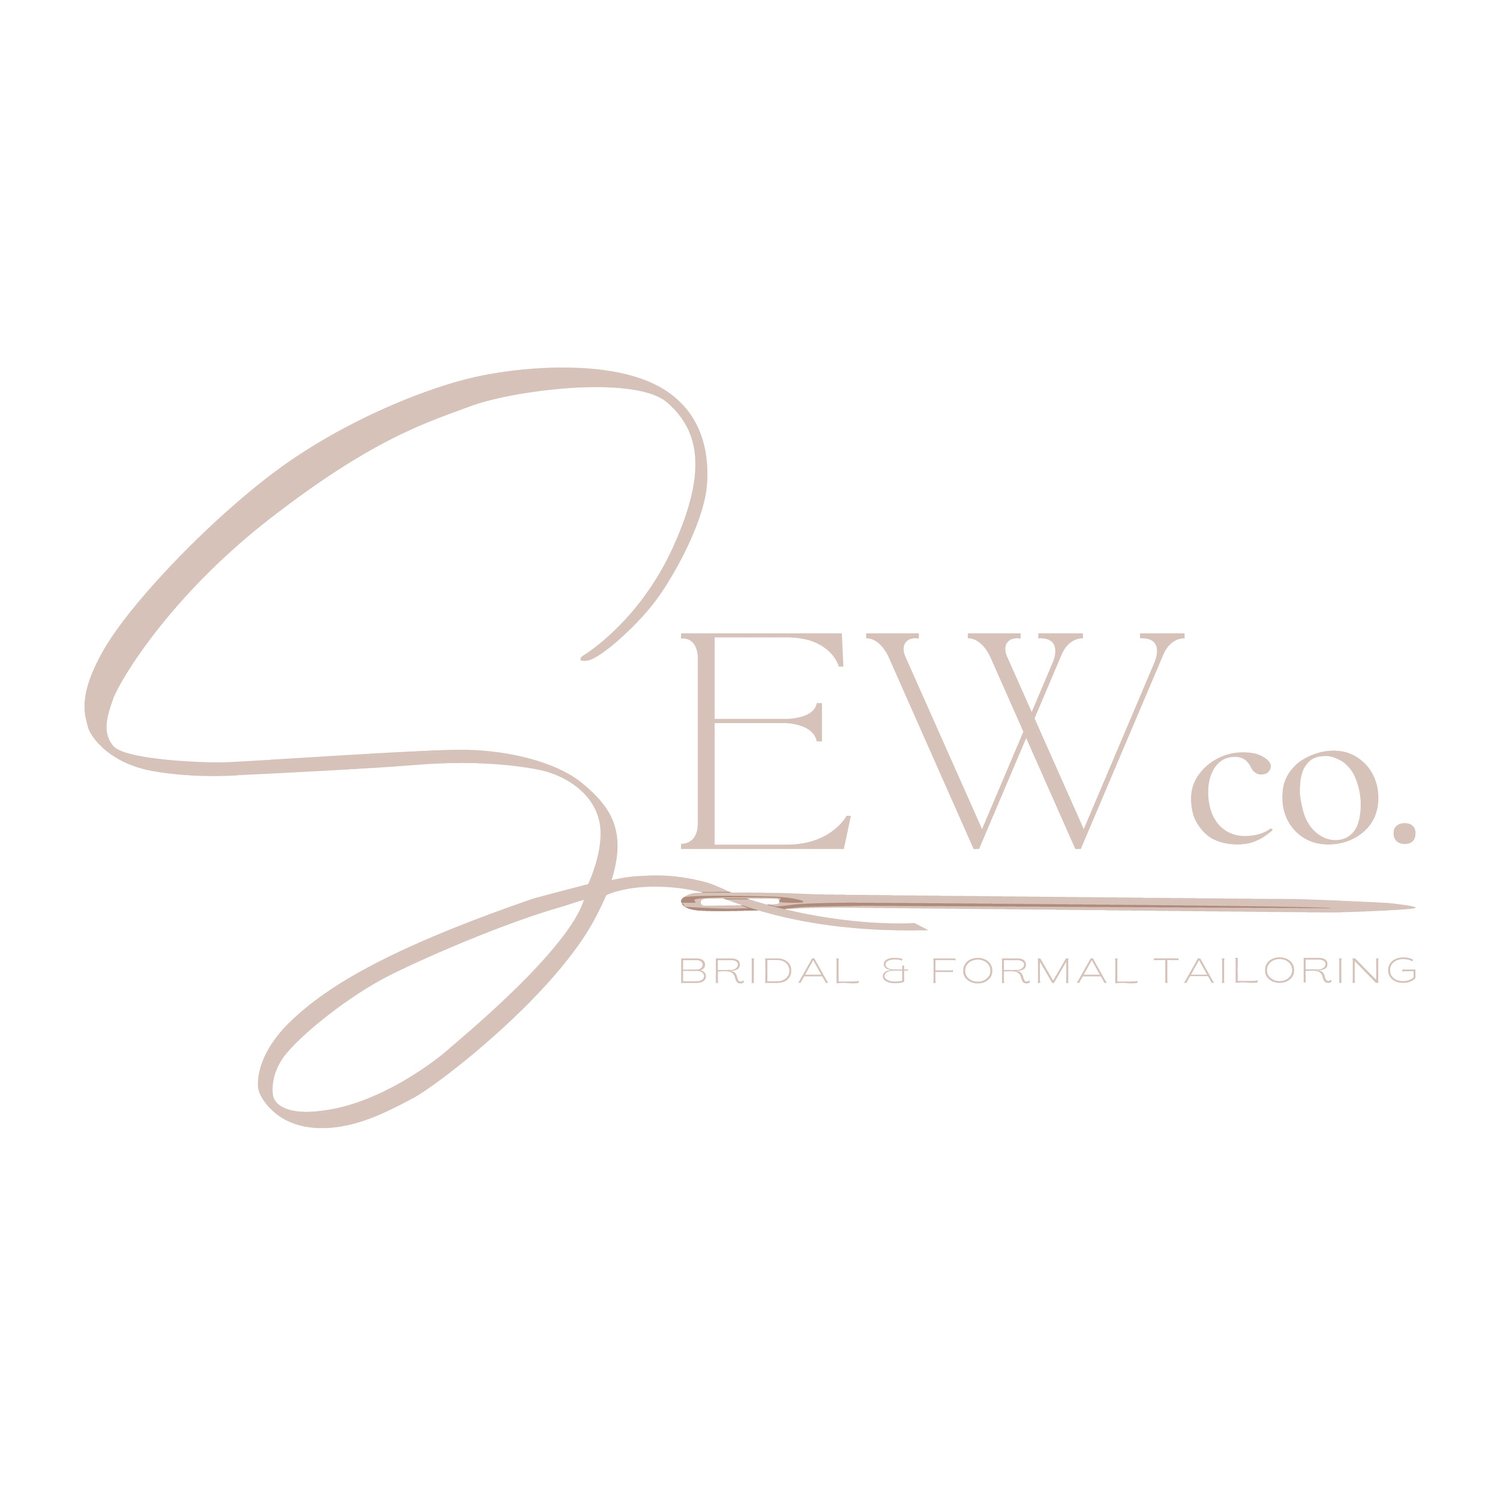 Sew Co.